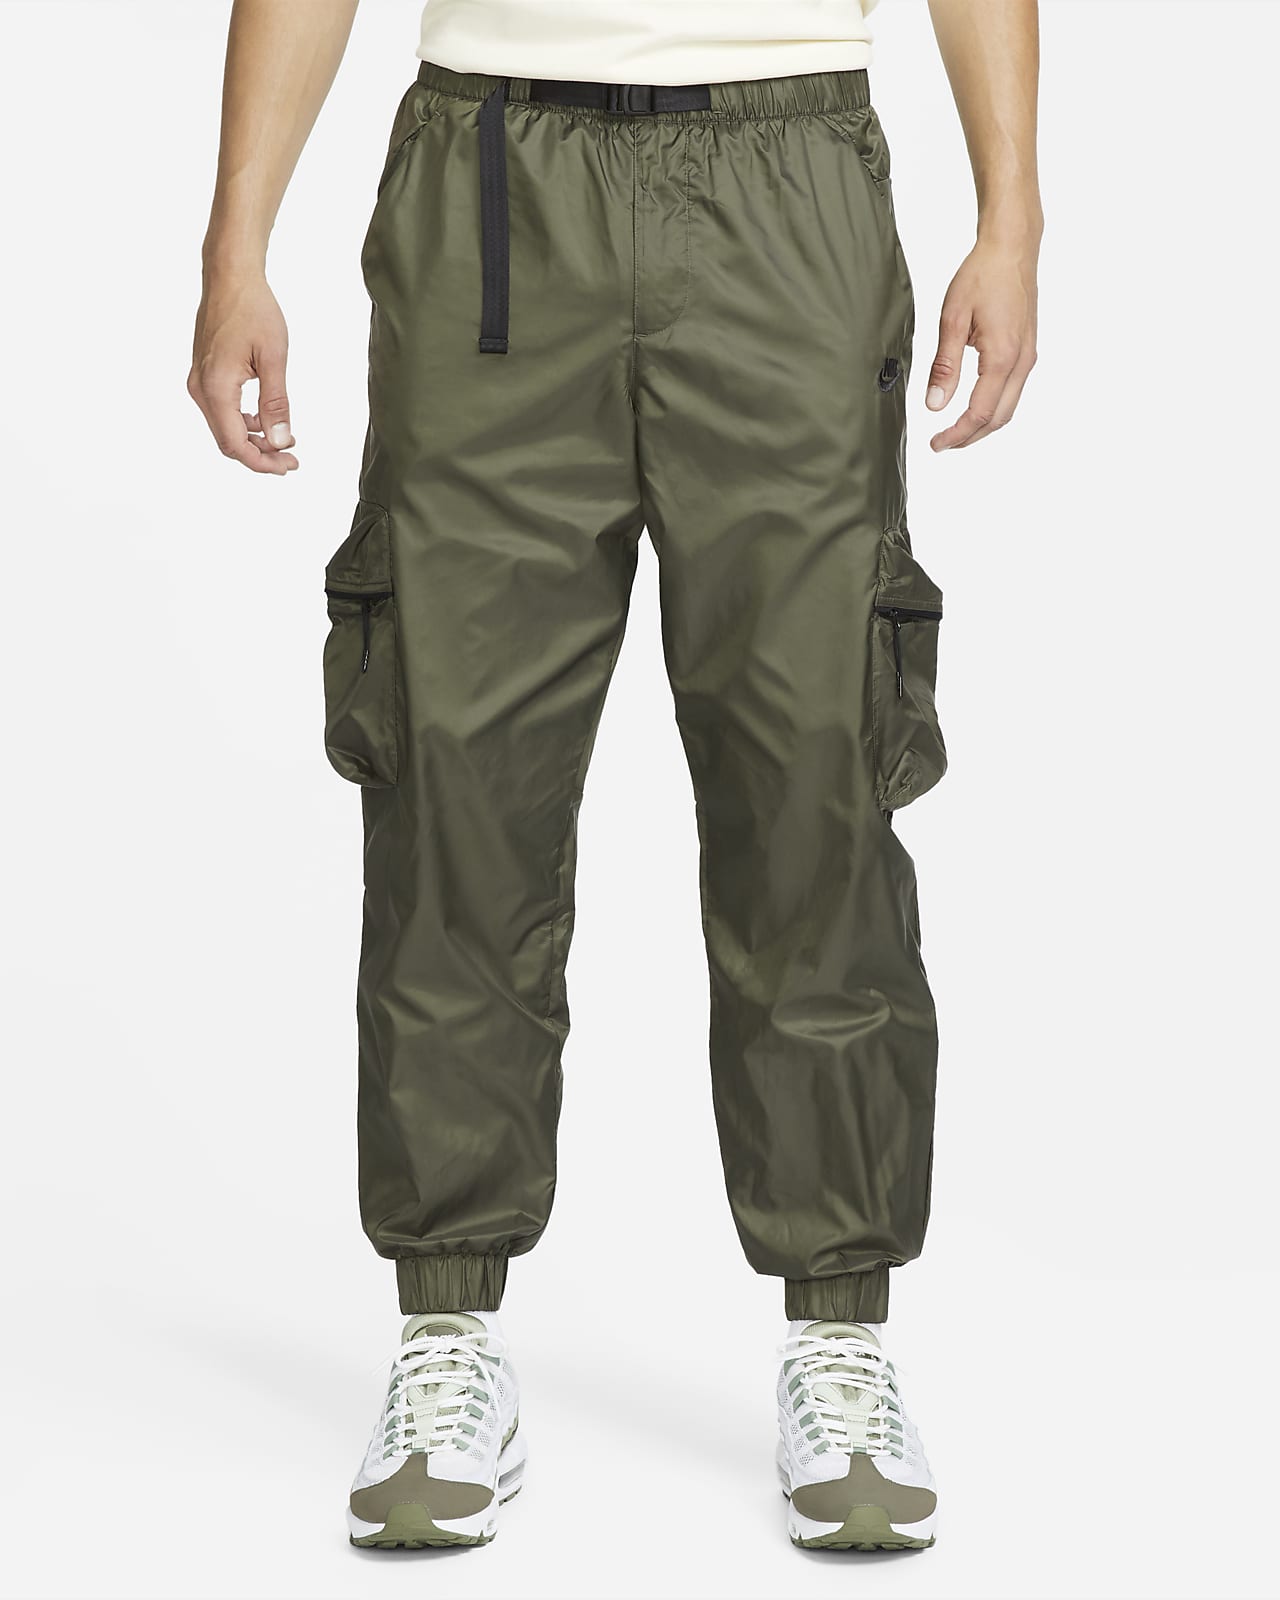 Pánské tkané kalhoty Nike Tech s podšívkou